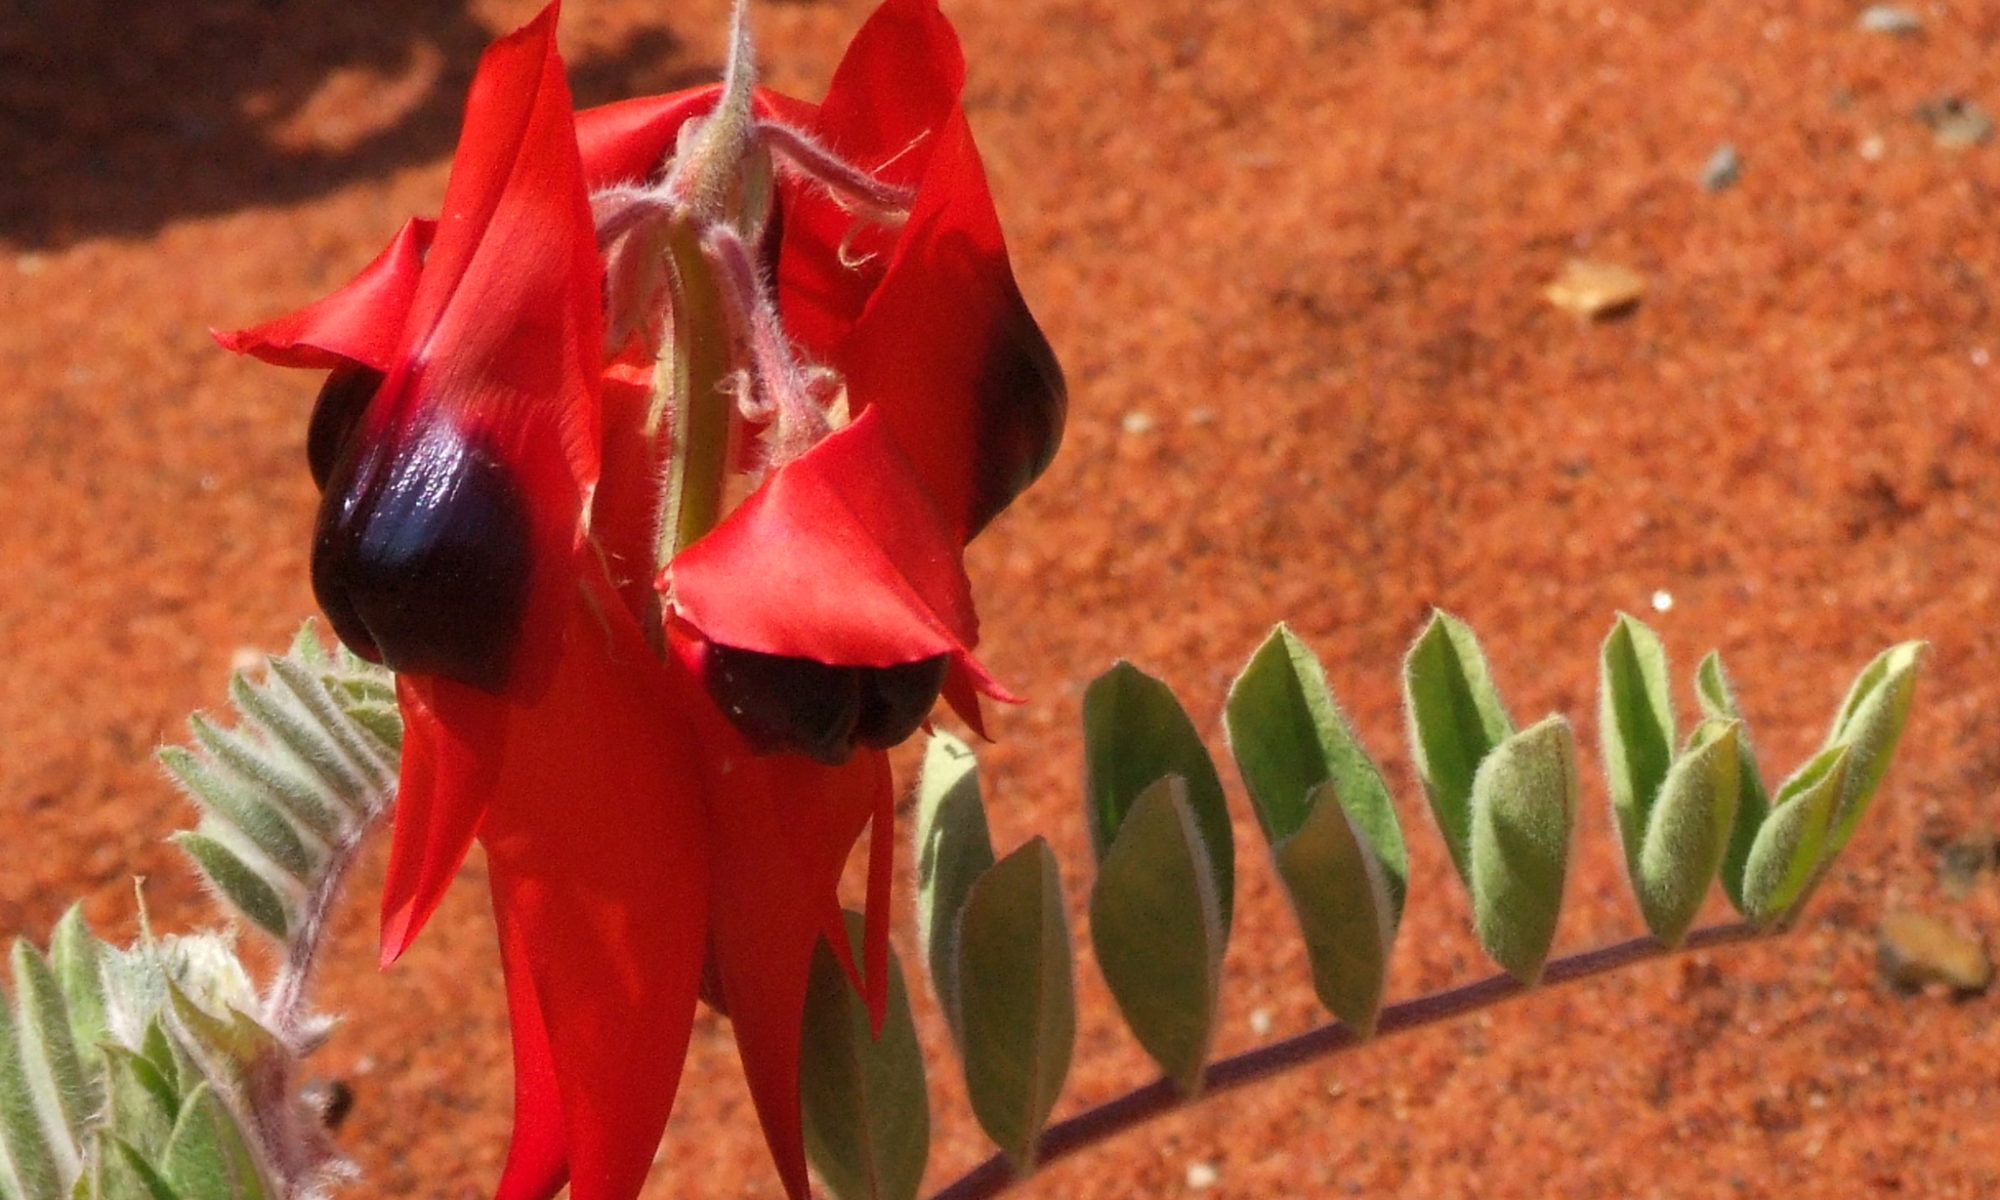 Fiore australiano che aiuta a trasformare e lasciare andare traumi, dolore, tristezza e ferite profonde anche del passato